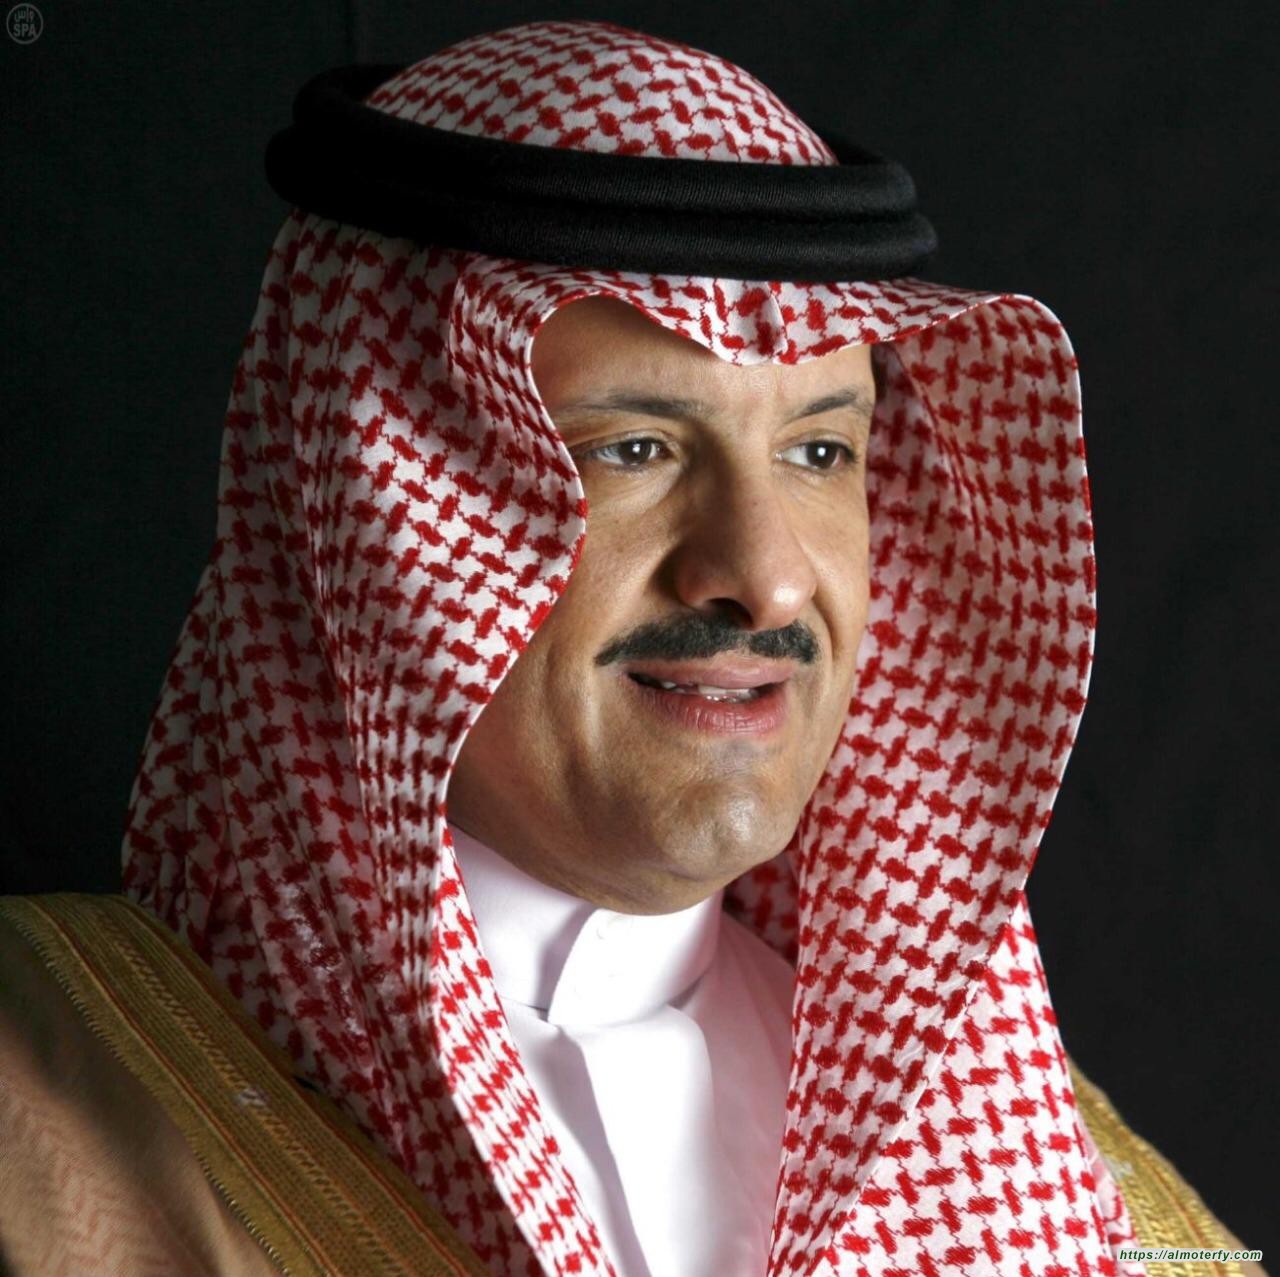 الأمير سلطان بن سلمان يرفع شكره لخادم الحرمين الشريفين بمناسبة تشكيل مجلس إدارة الهيئة السعودية للفضاء